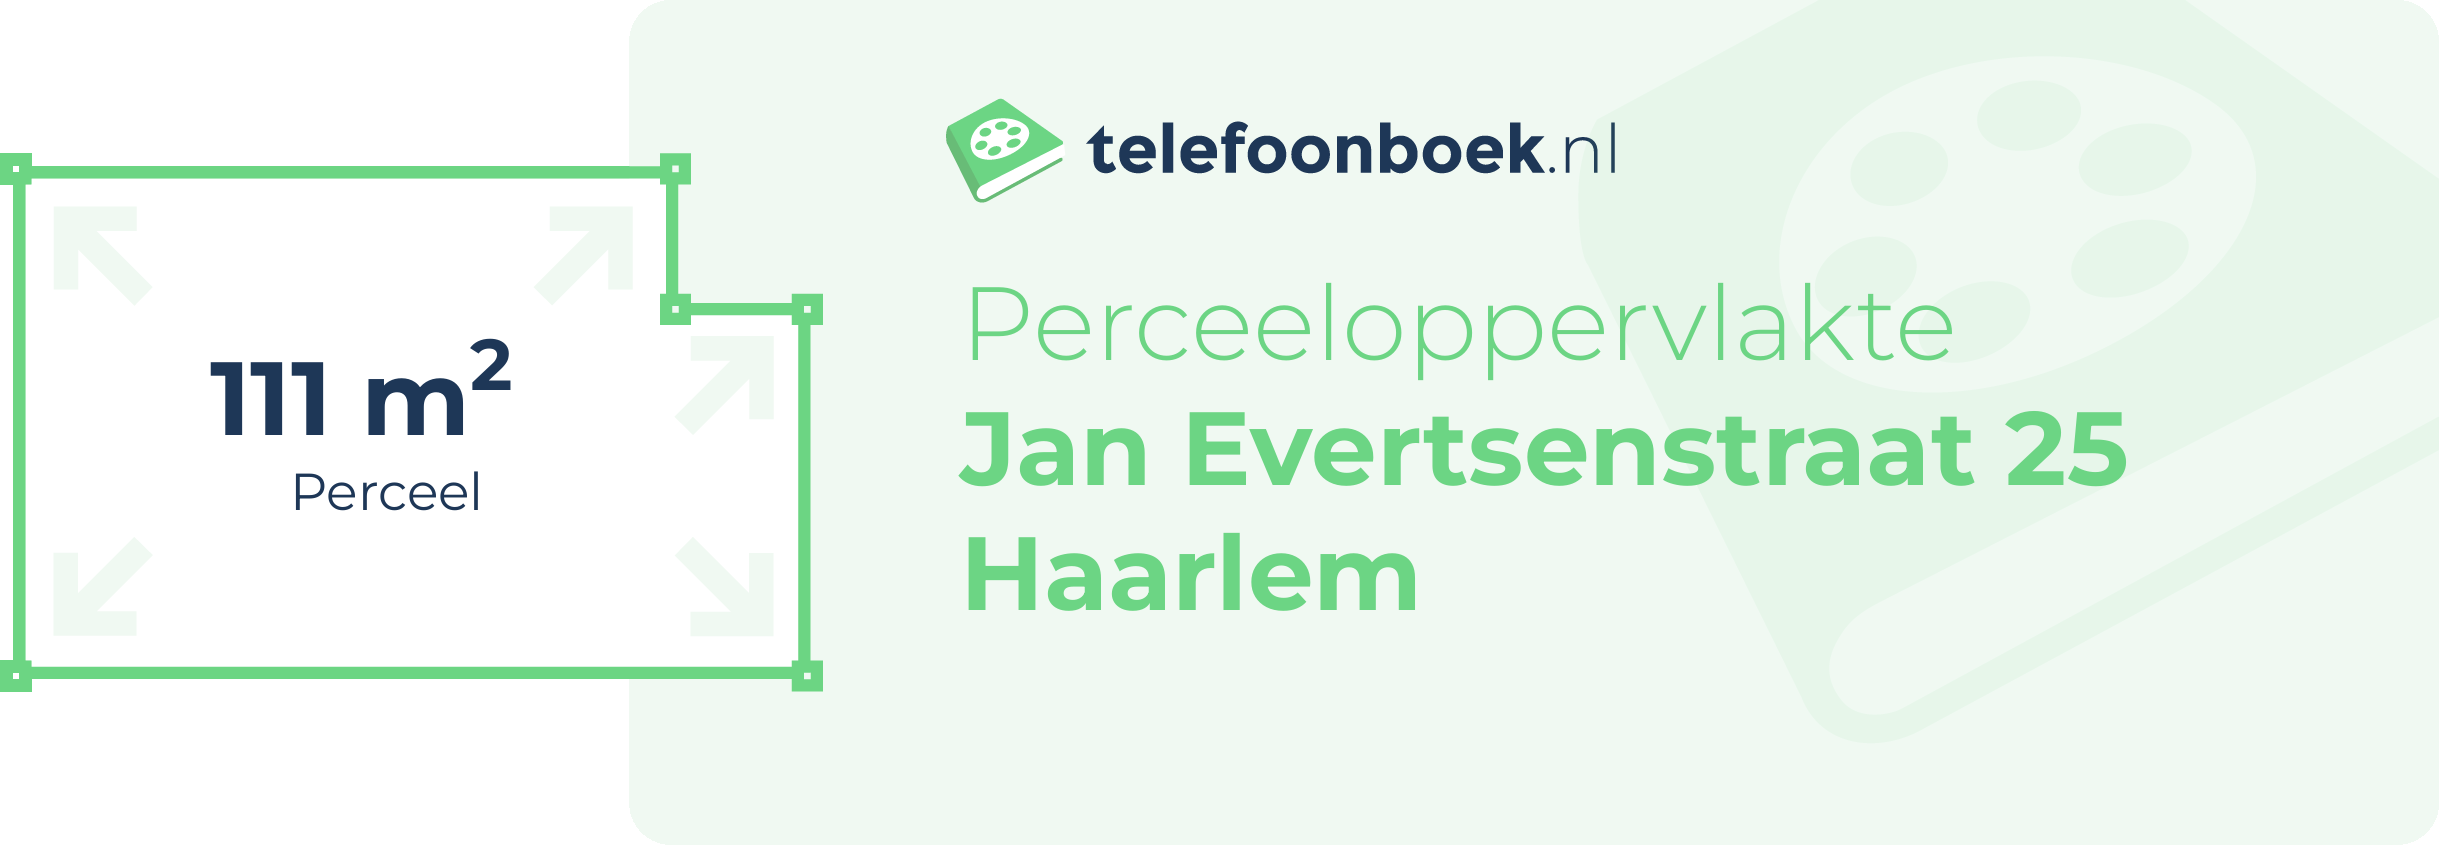 Perceeloppervlakte Jan Evertsenstraat 25 Haarlem